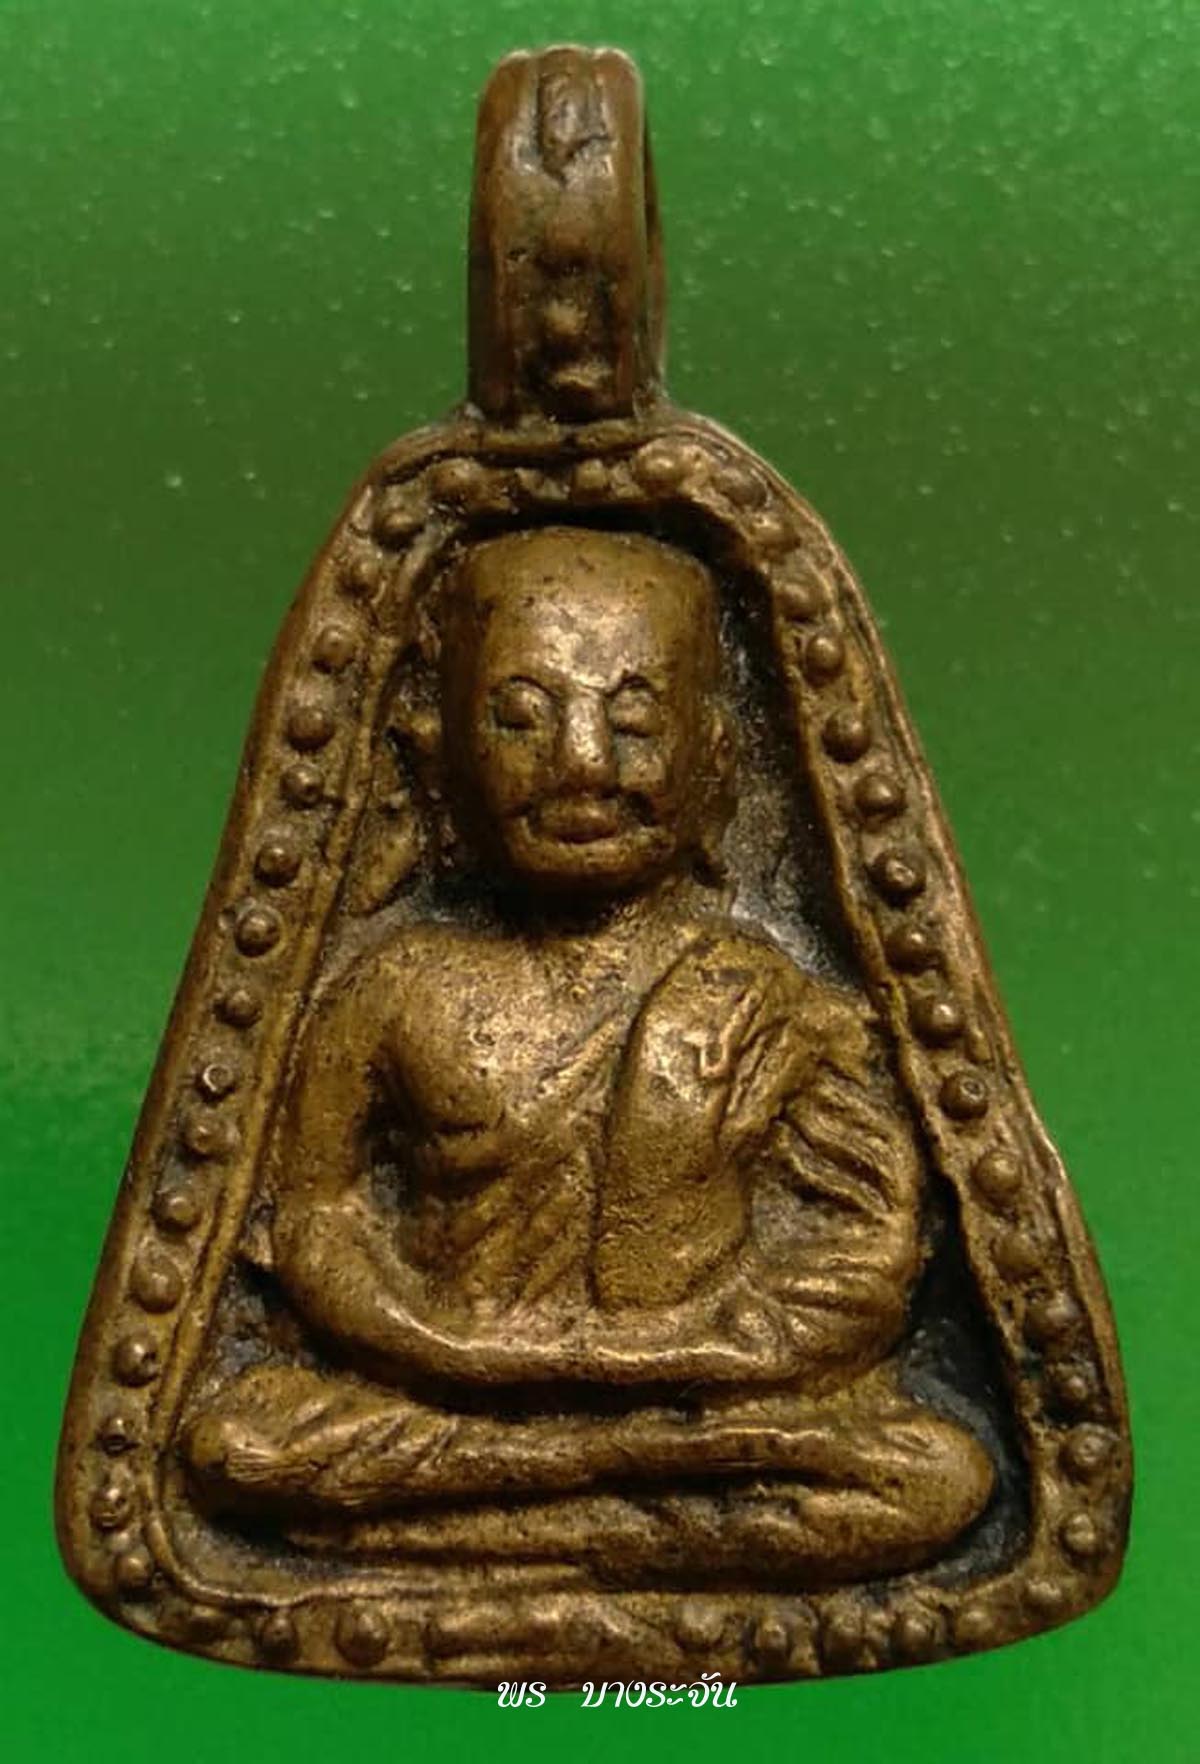 รูปหล่อหลวงพ่อเงินบางคลาน thai amulet phra lp ngern wat bangklan pim job thai amulet 銮菩银 财佛, 鑾菩銀 大師,